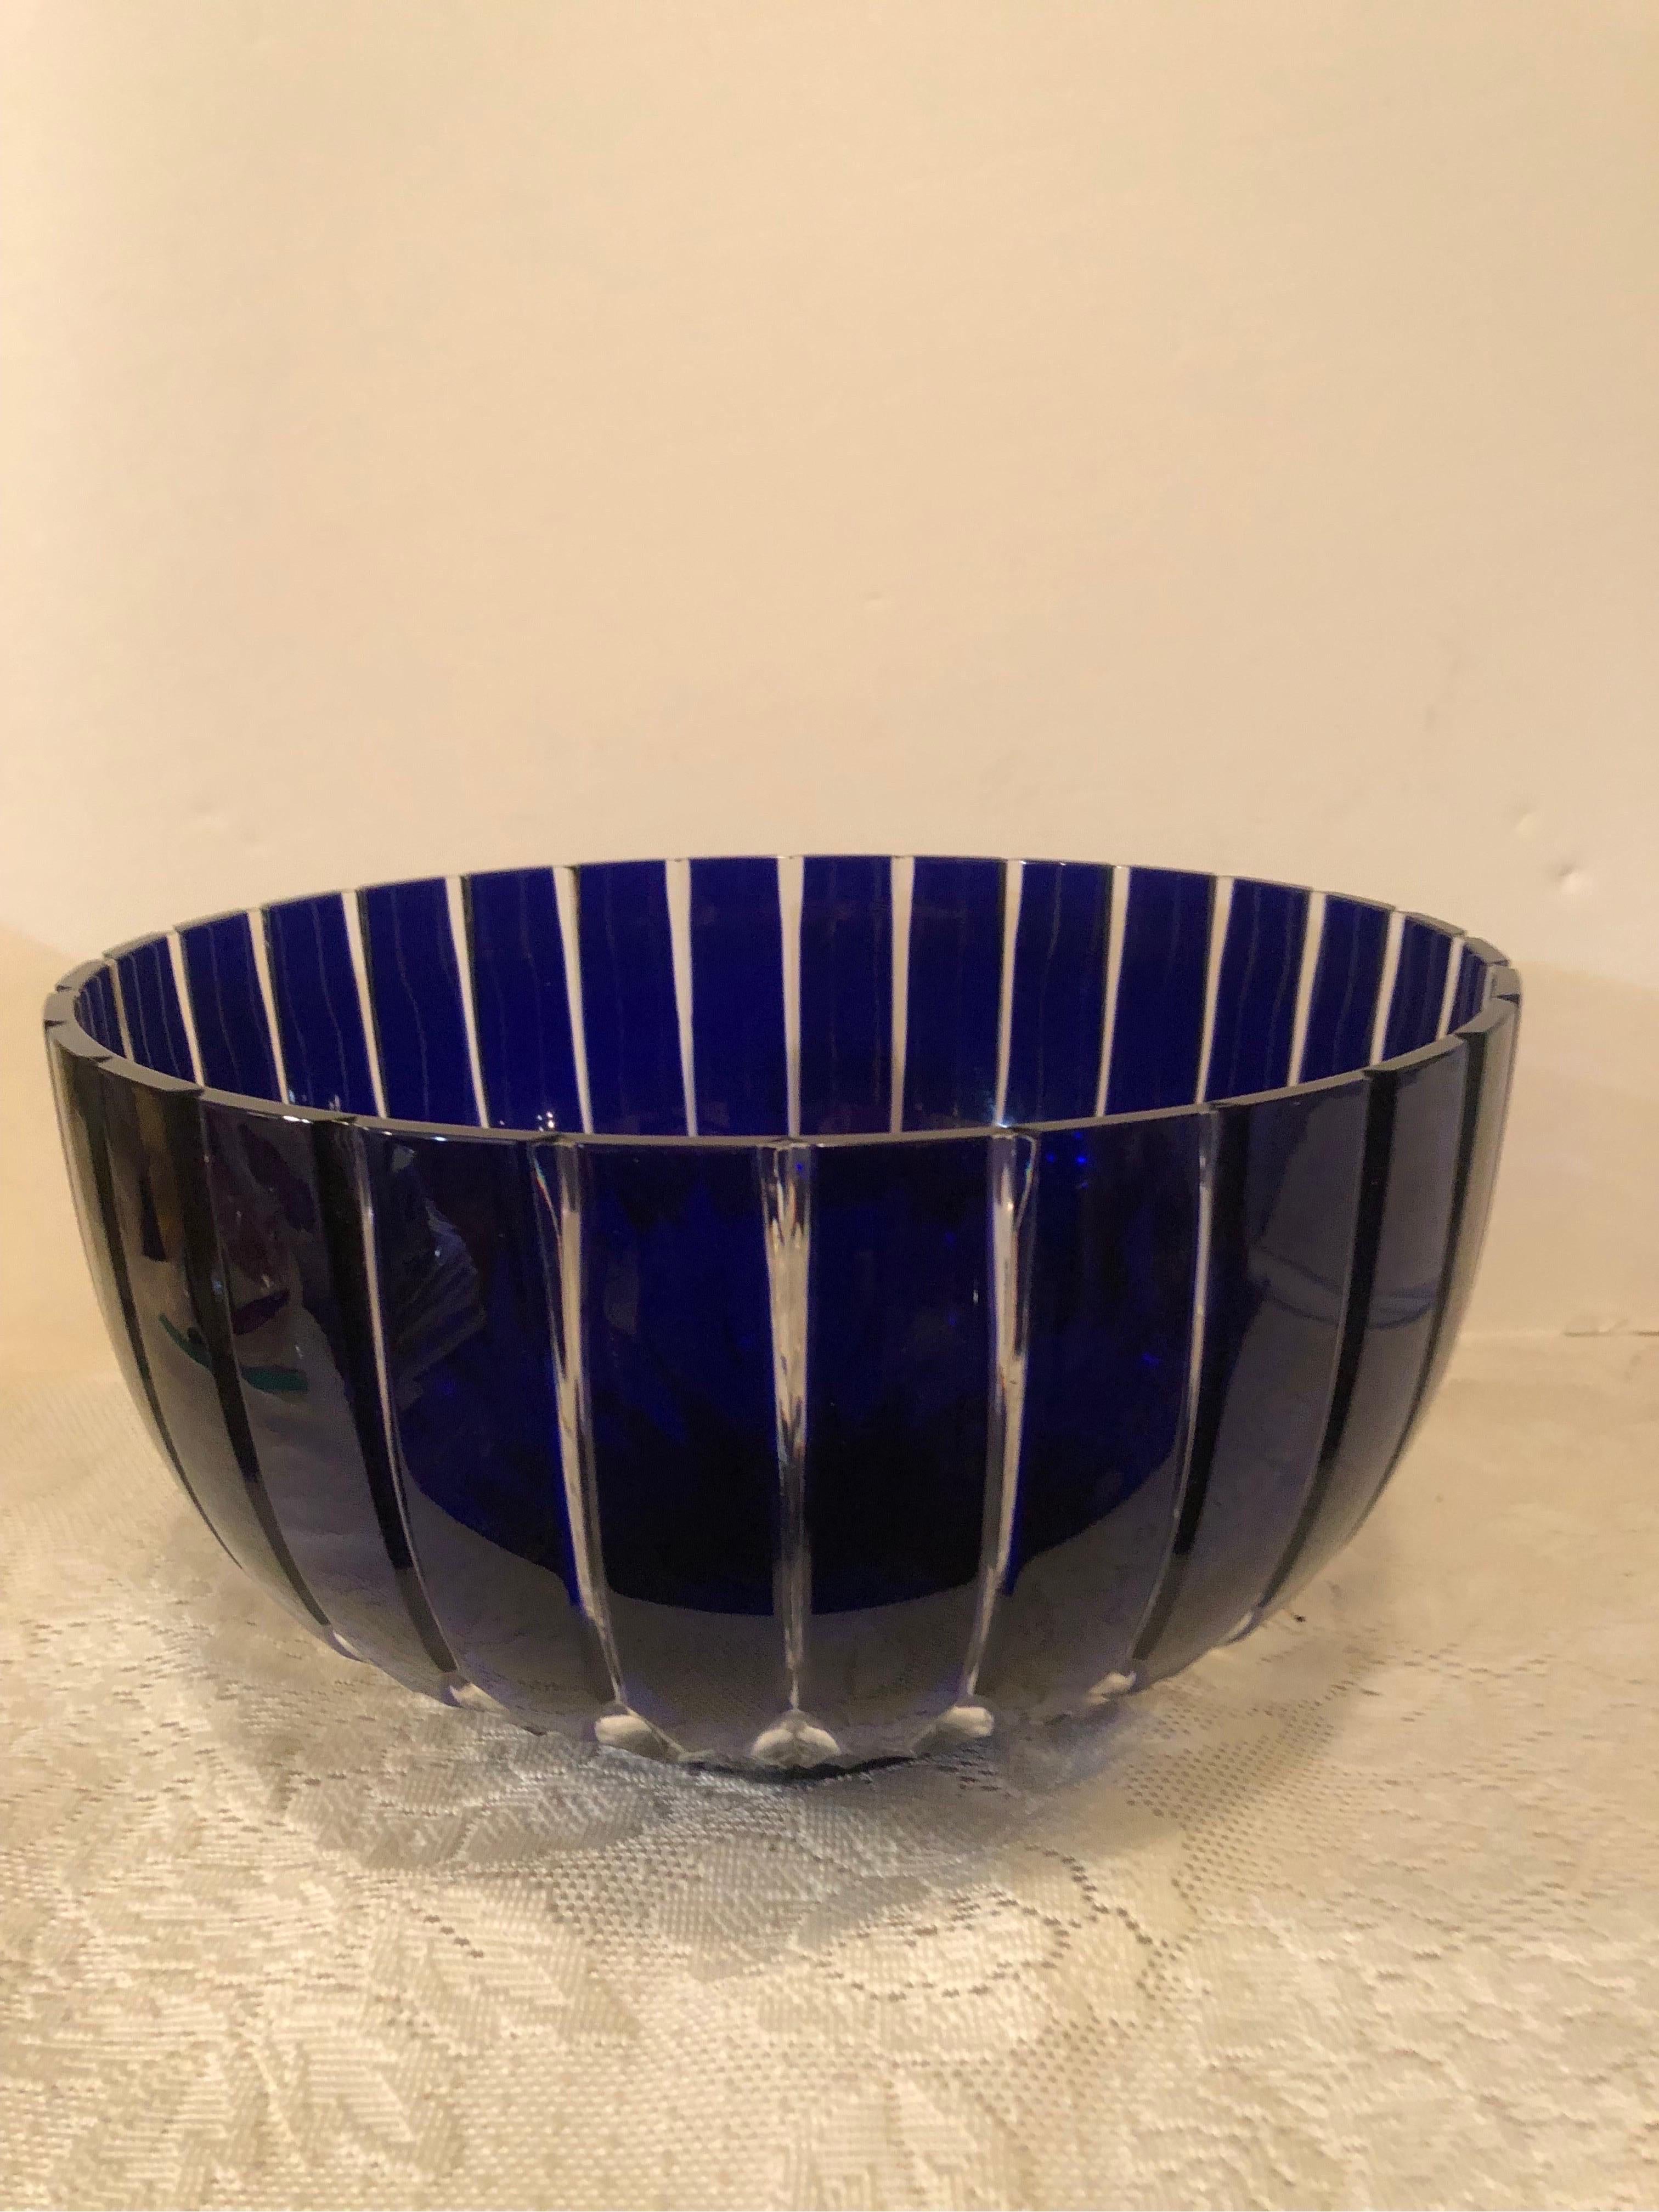 Il s'agit d'un bol à punch ou d'un bol de centre de table en verre de Bohème en cristal cobalt absolument magnifique. C'est vraiment une pièce de présentation étonnante pour décorer votre maison. La couleur bleu cobalt et la coupe de ce bol en verre